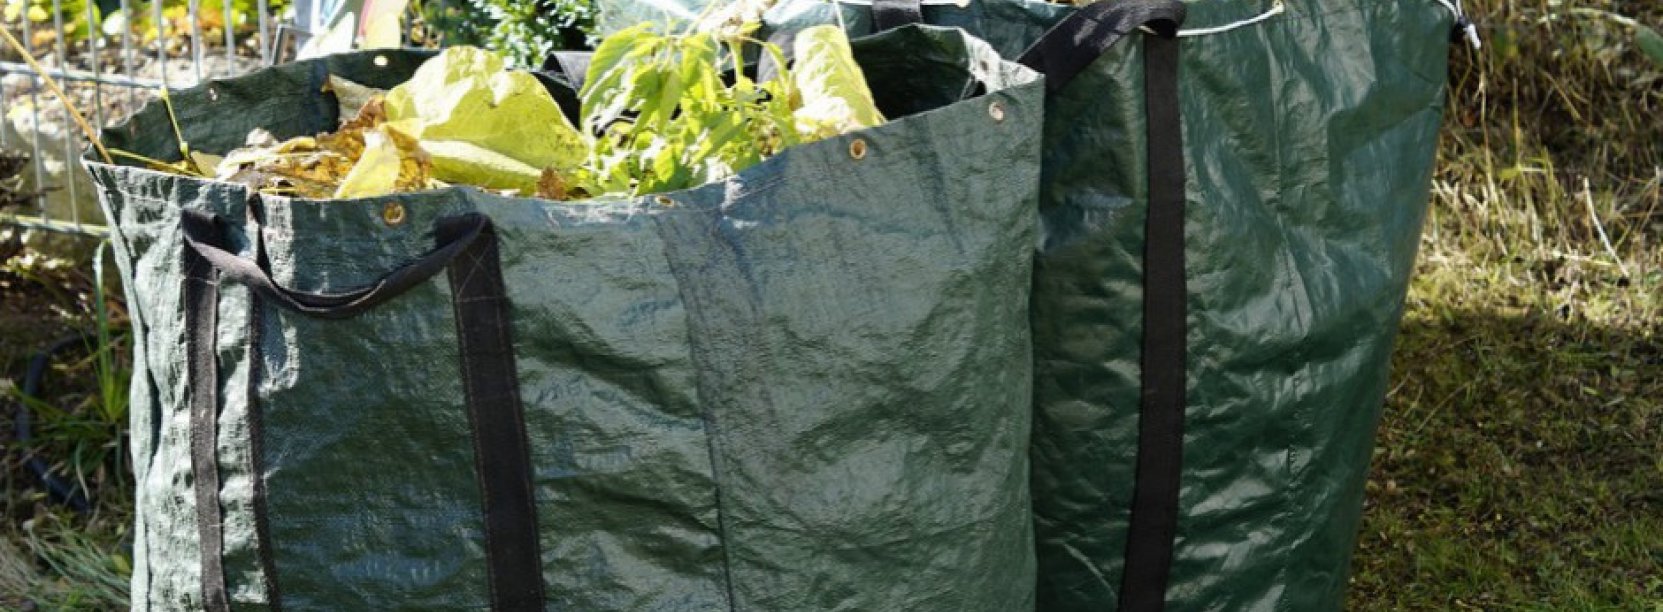 Dwie duże zielone torby tekstylne wypełnione odpadami zielonymi 